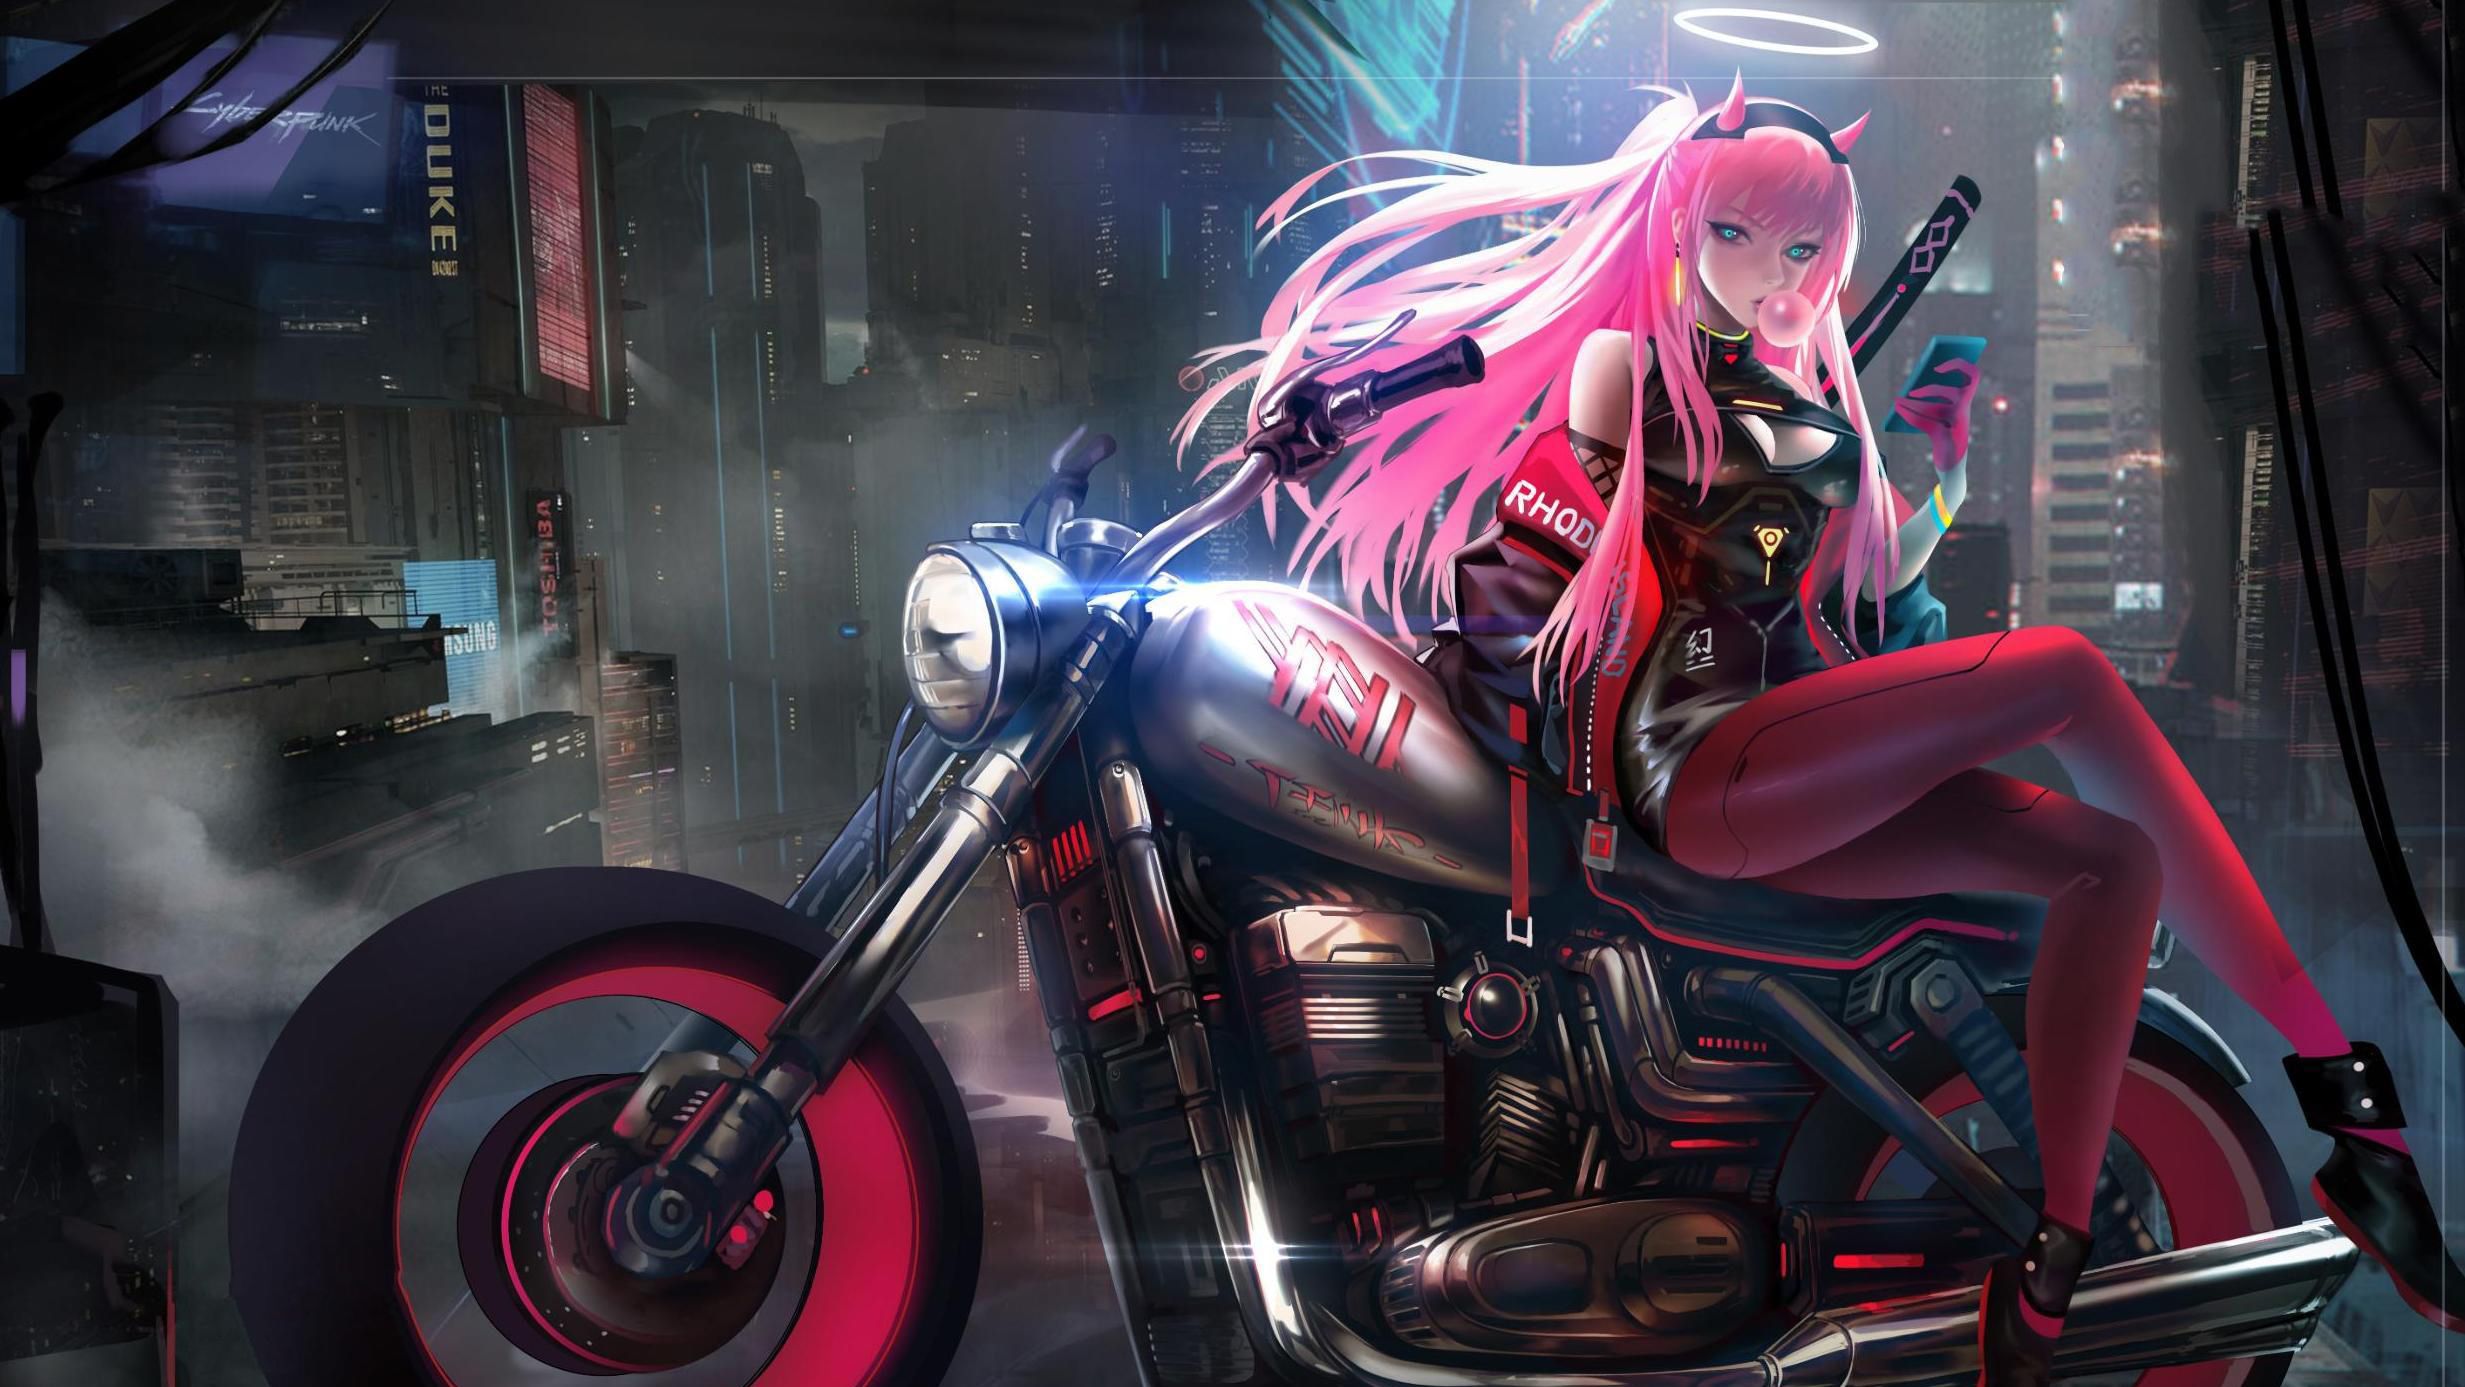 Anime Girl On Bike Art, HD Artist, 4k Wallpaper, Image